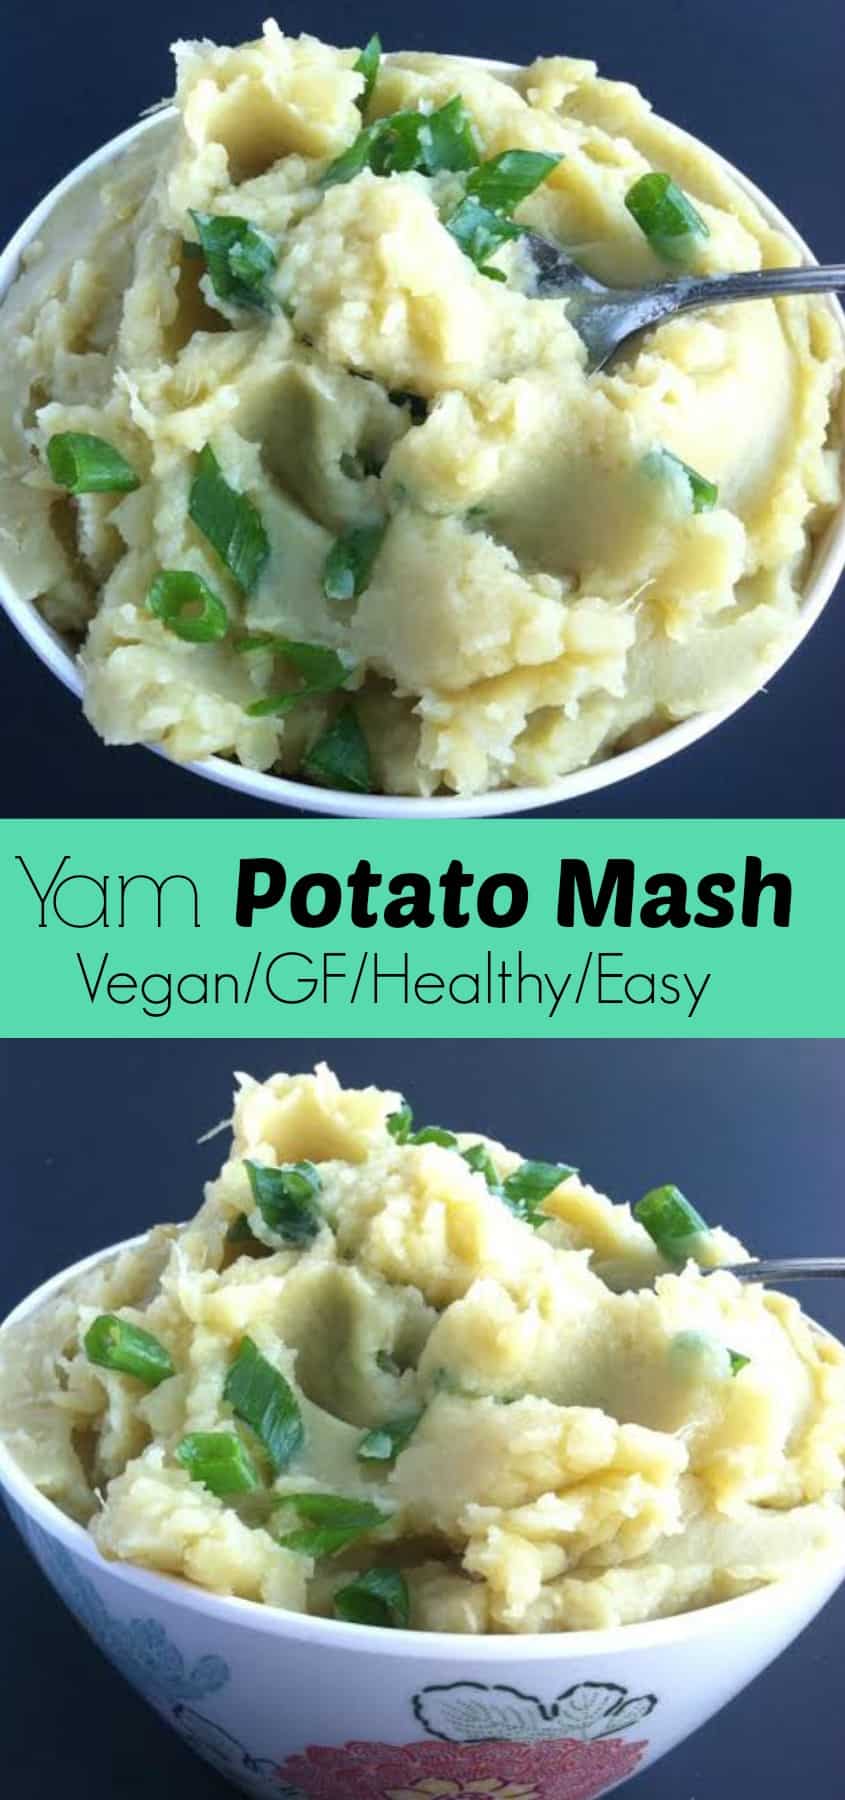 Yam Potato Mash